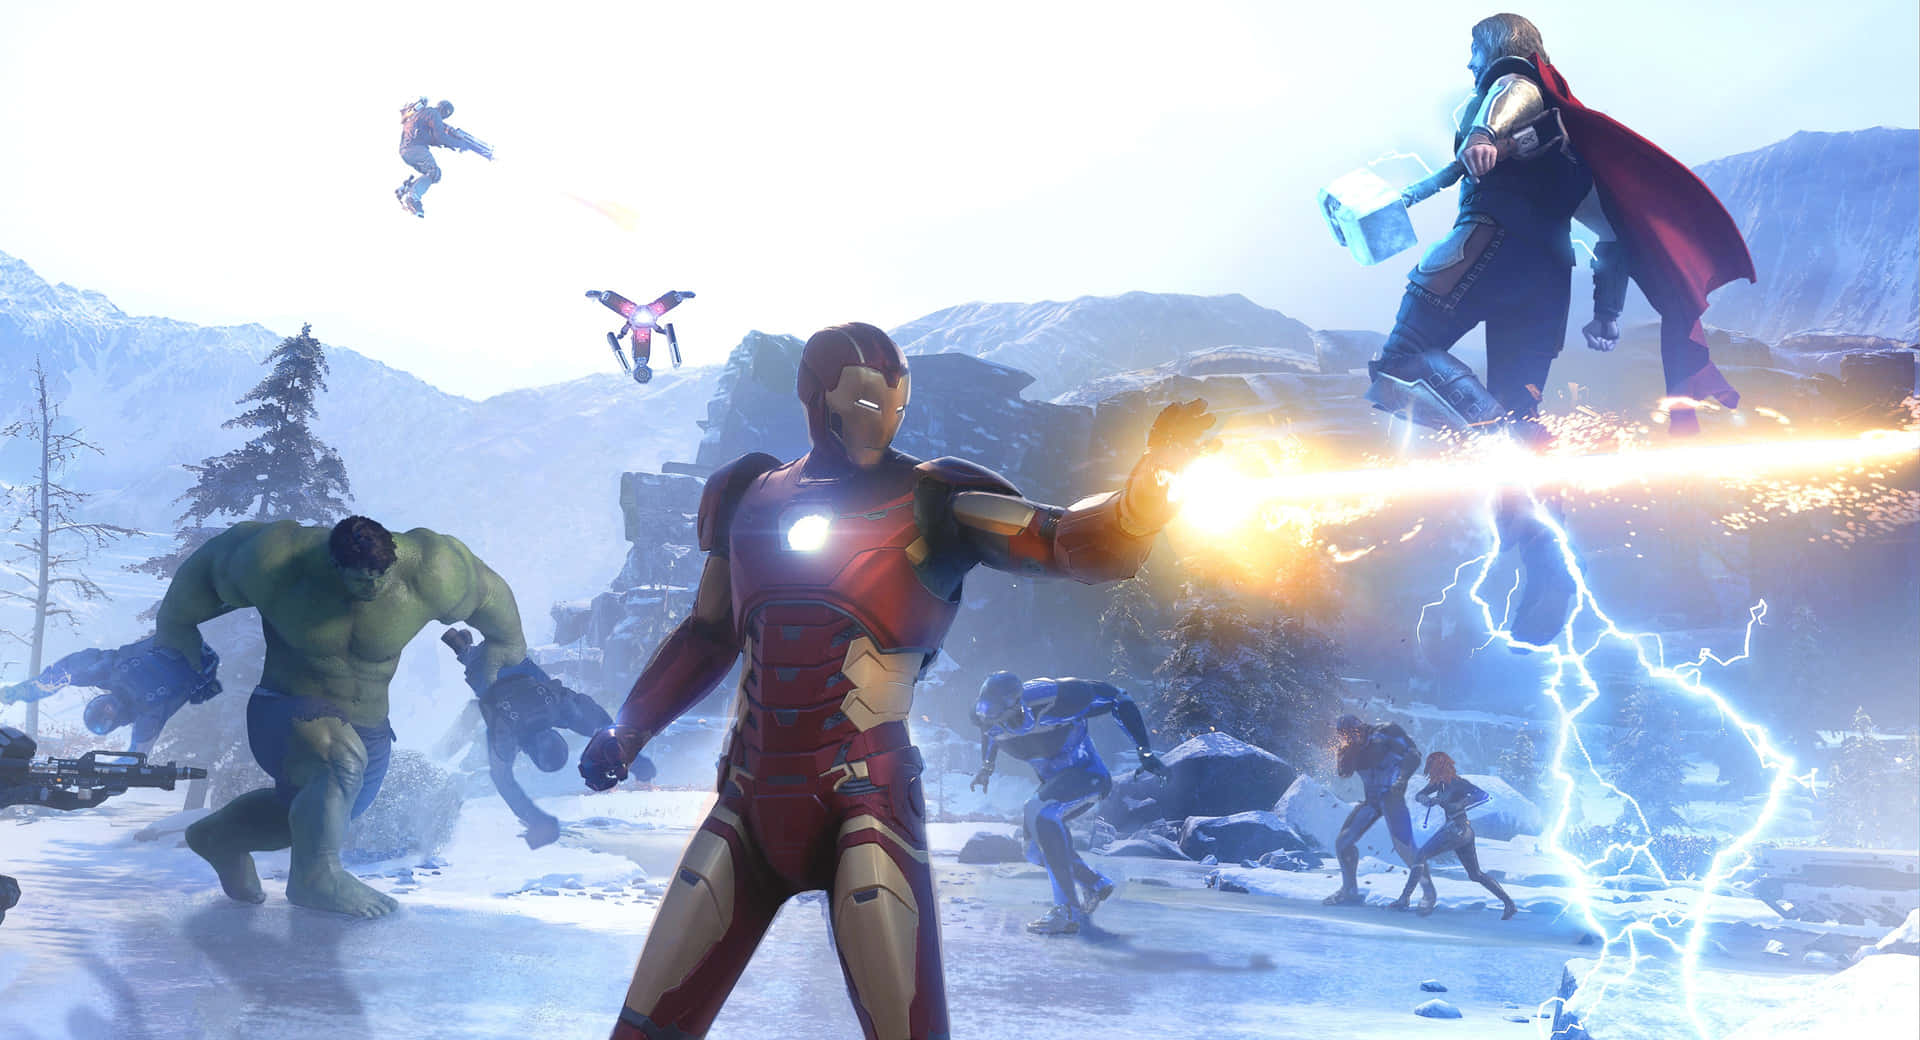 Intense Superhero Battle in a Stunning Video Game Wallpaper